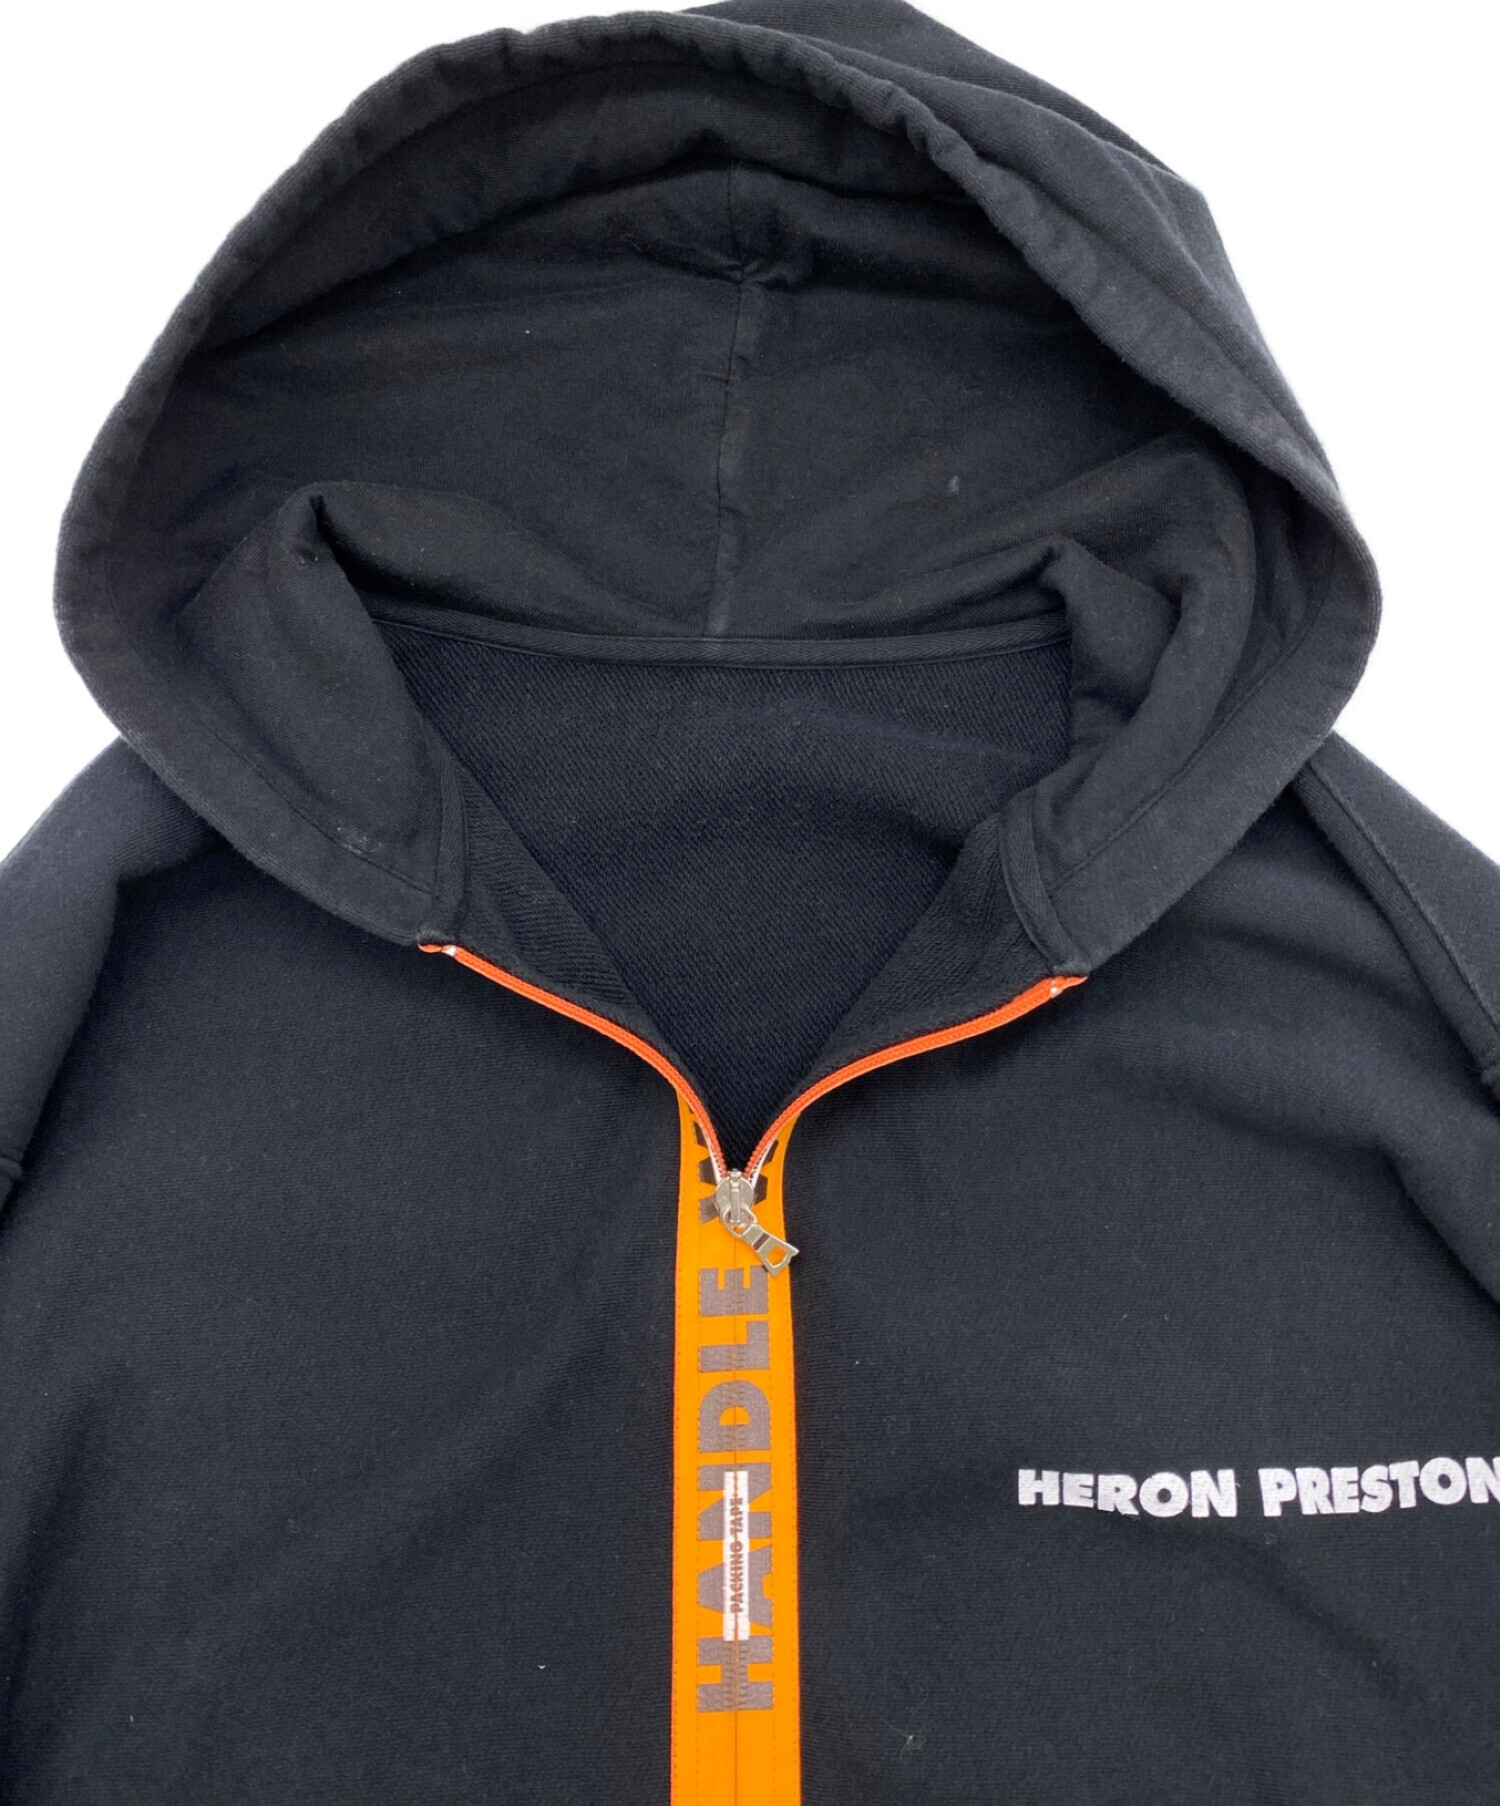 HERON PRESTON (ヘロンプレストン) ジップパーカー ブラック サイズ:Ｍ